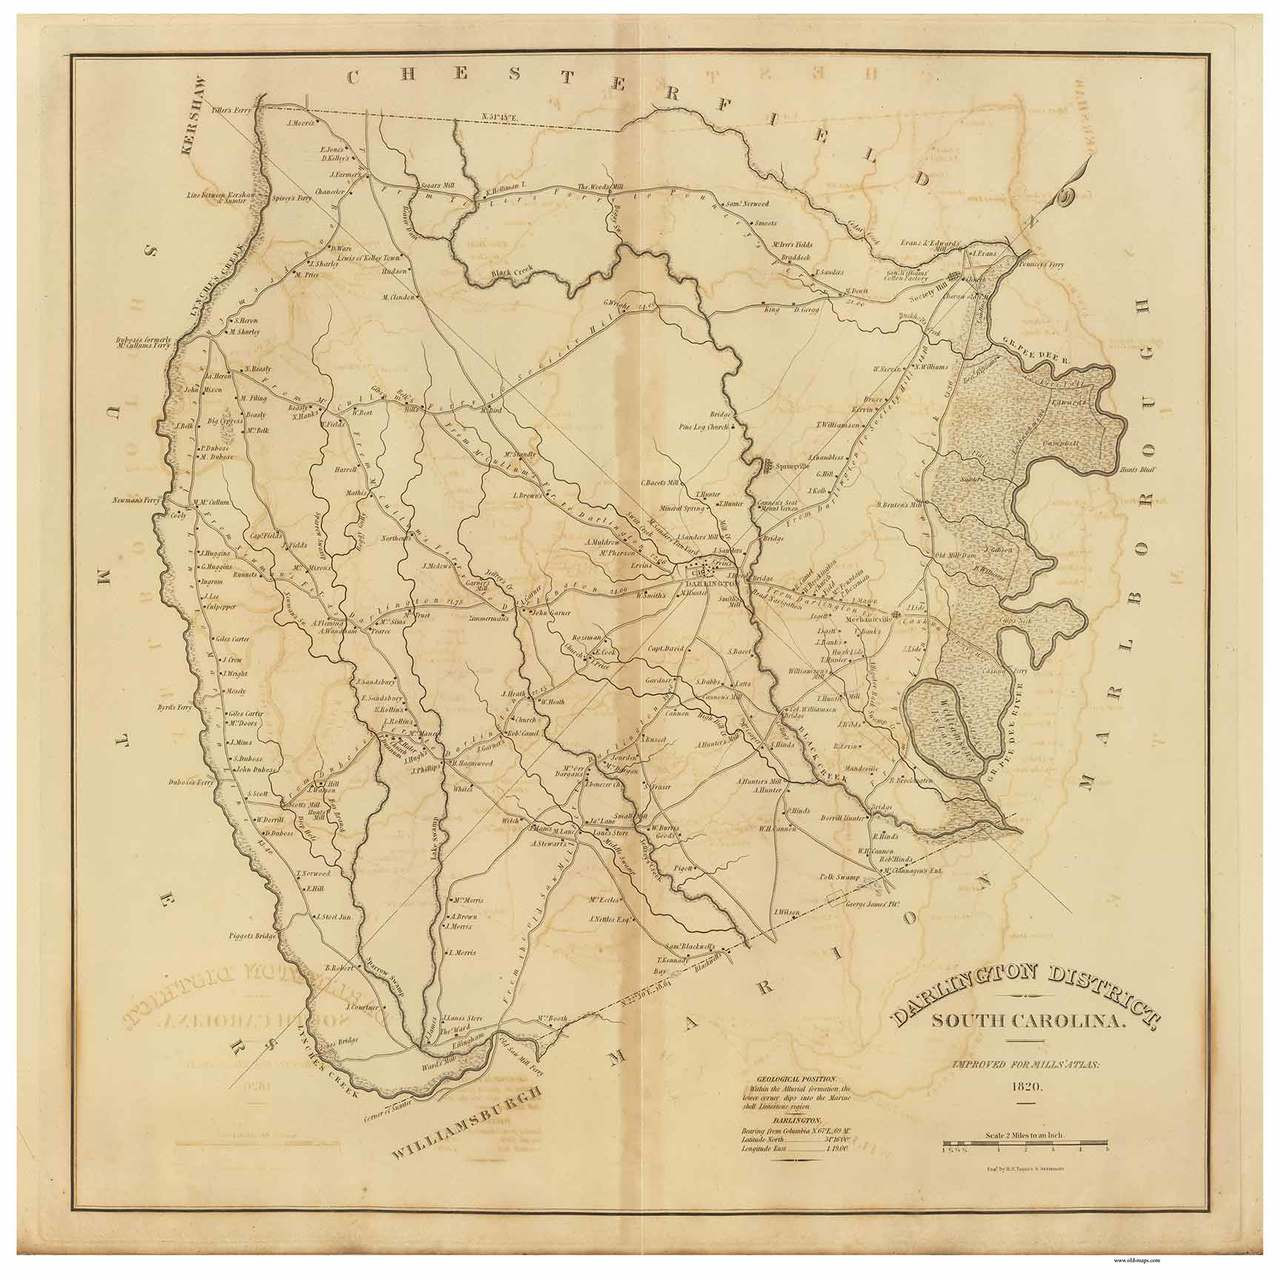 Darlington  District South Carolina 1820 Mills' Atlas Map 24"x19" 